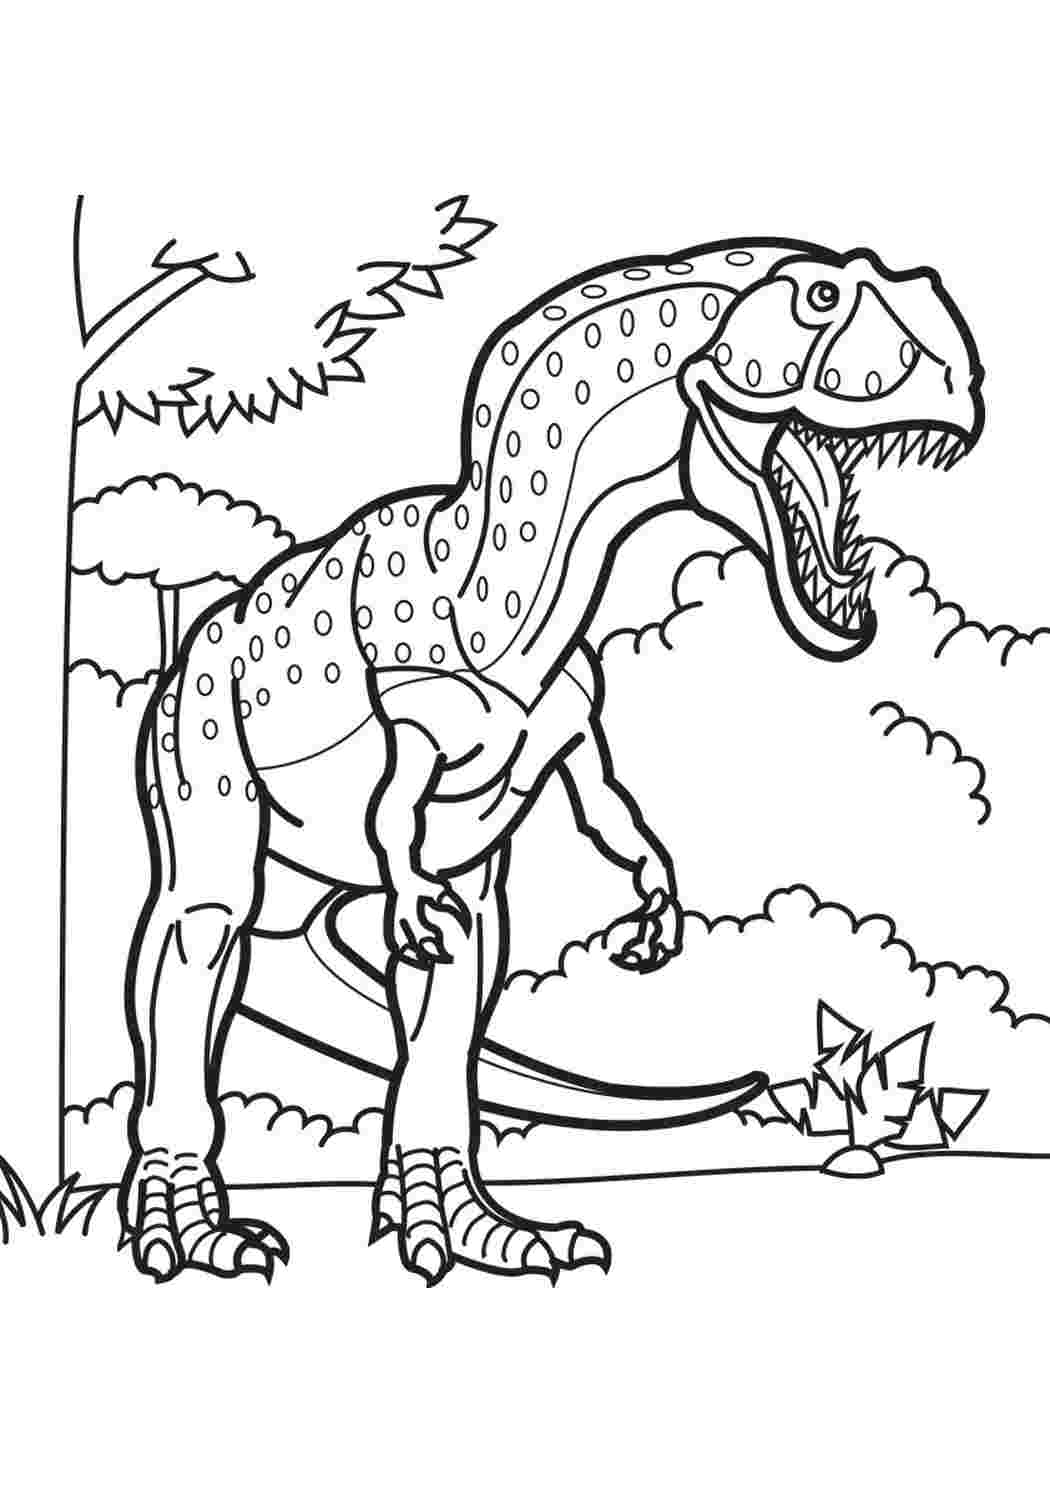 Динозавры раскраска а4. Гигантозавр раскраска. Динозавры / раскраска. Раскраска "Динозаврики". Динозавр раскраска для детей.